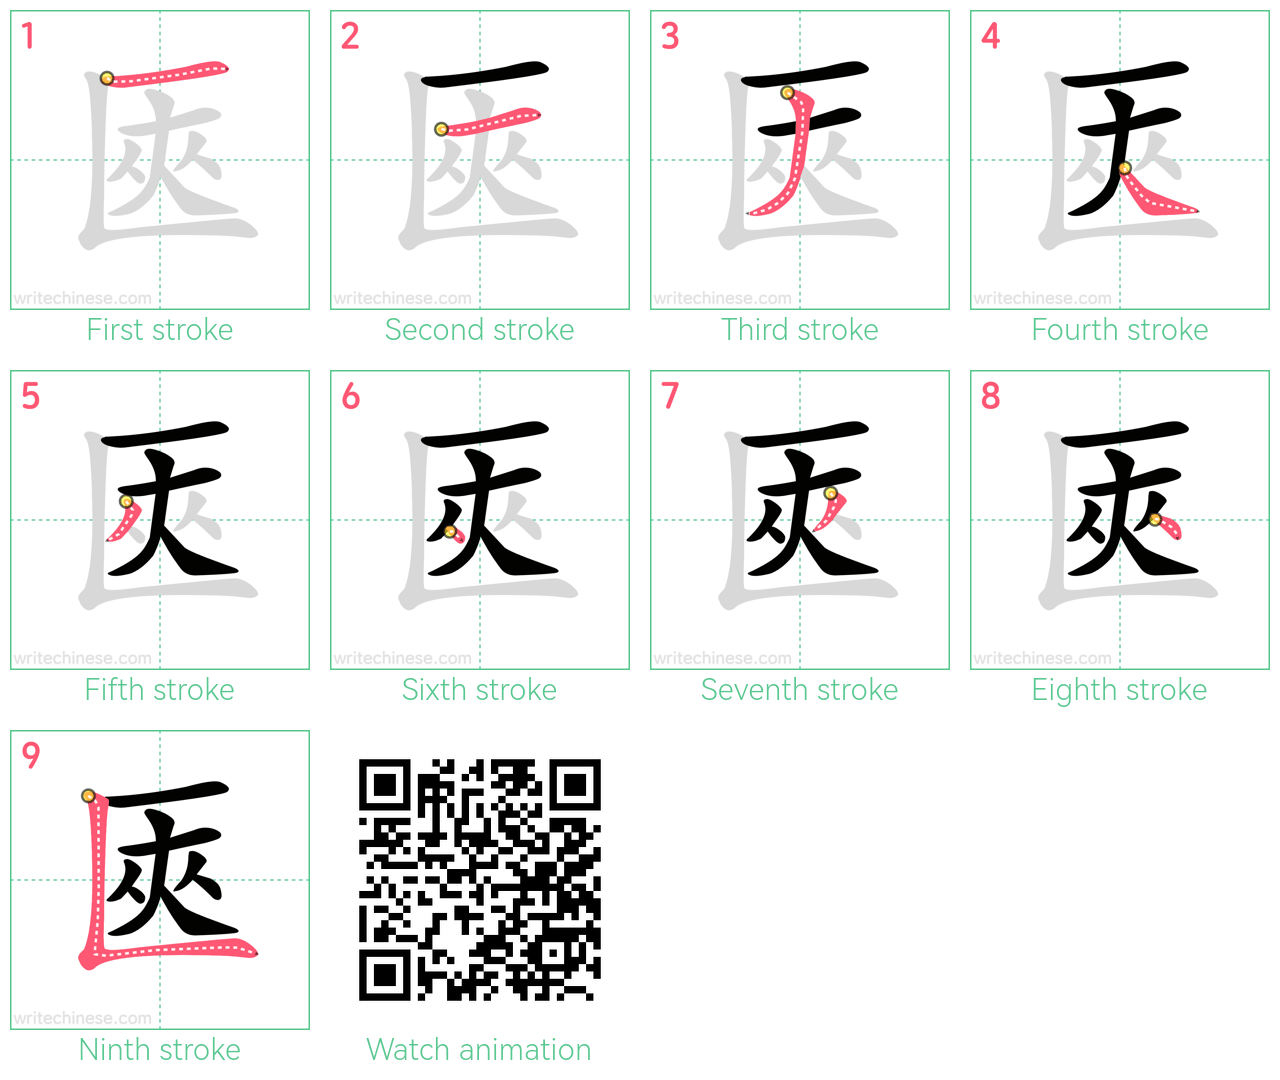 匧 step-by-step stroke order diagrams